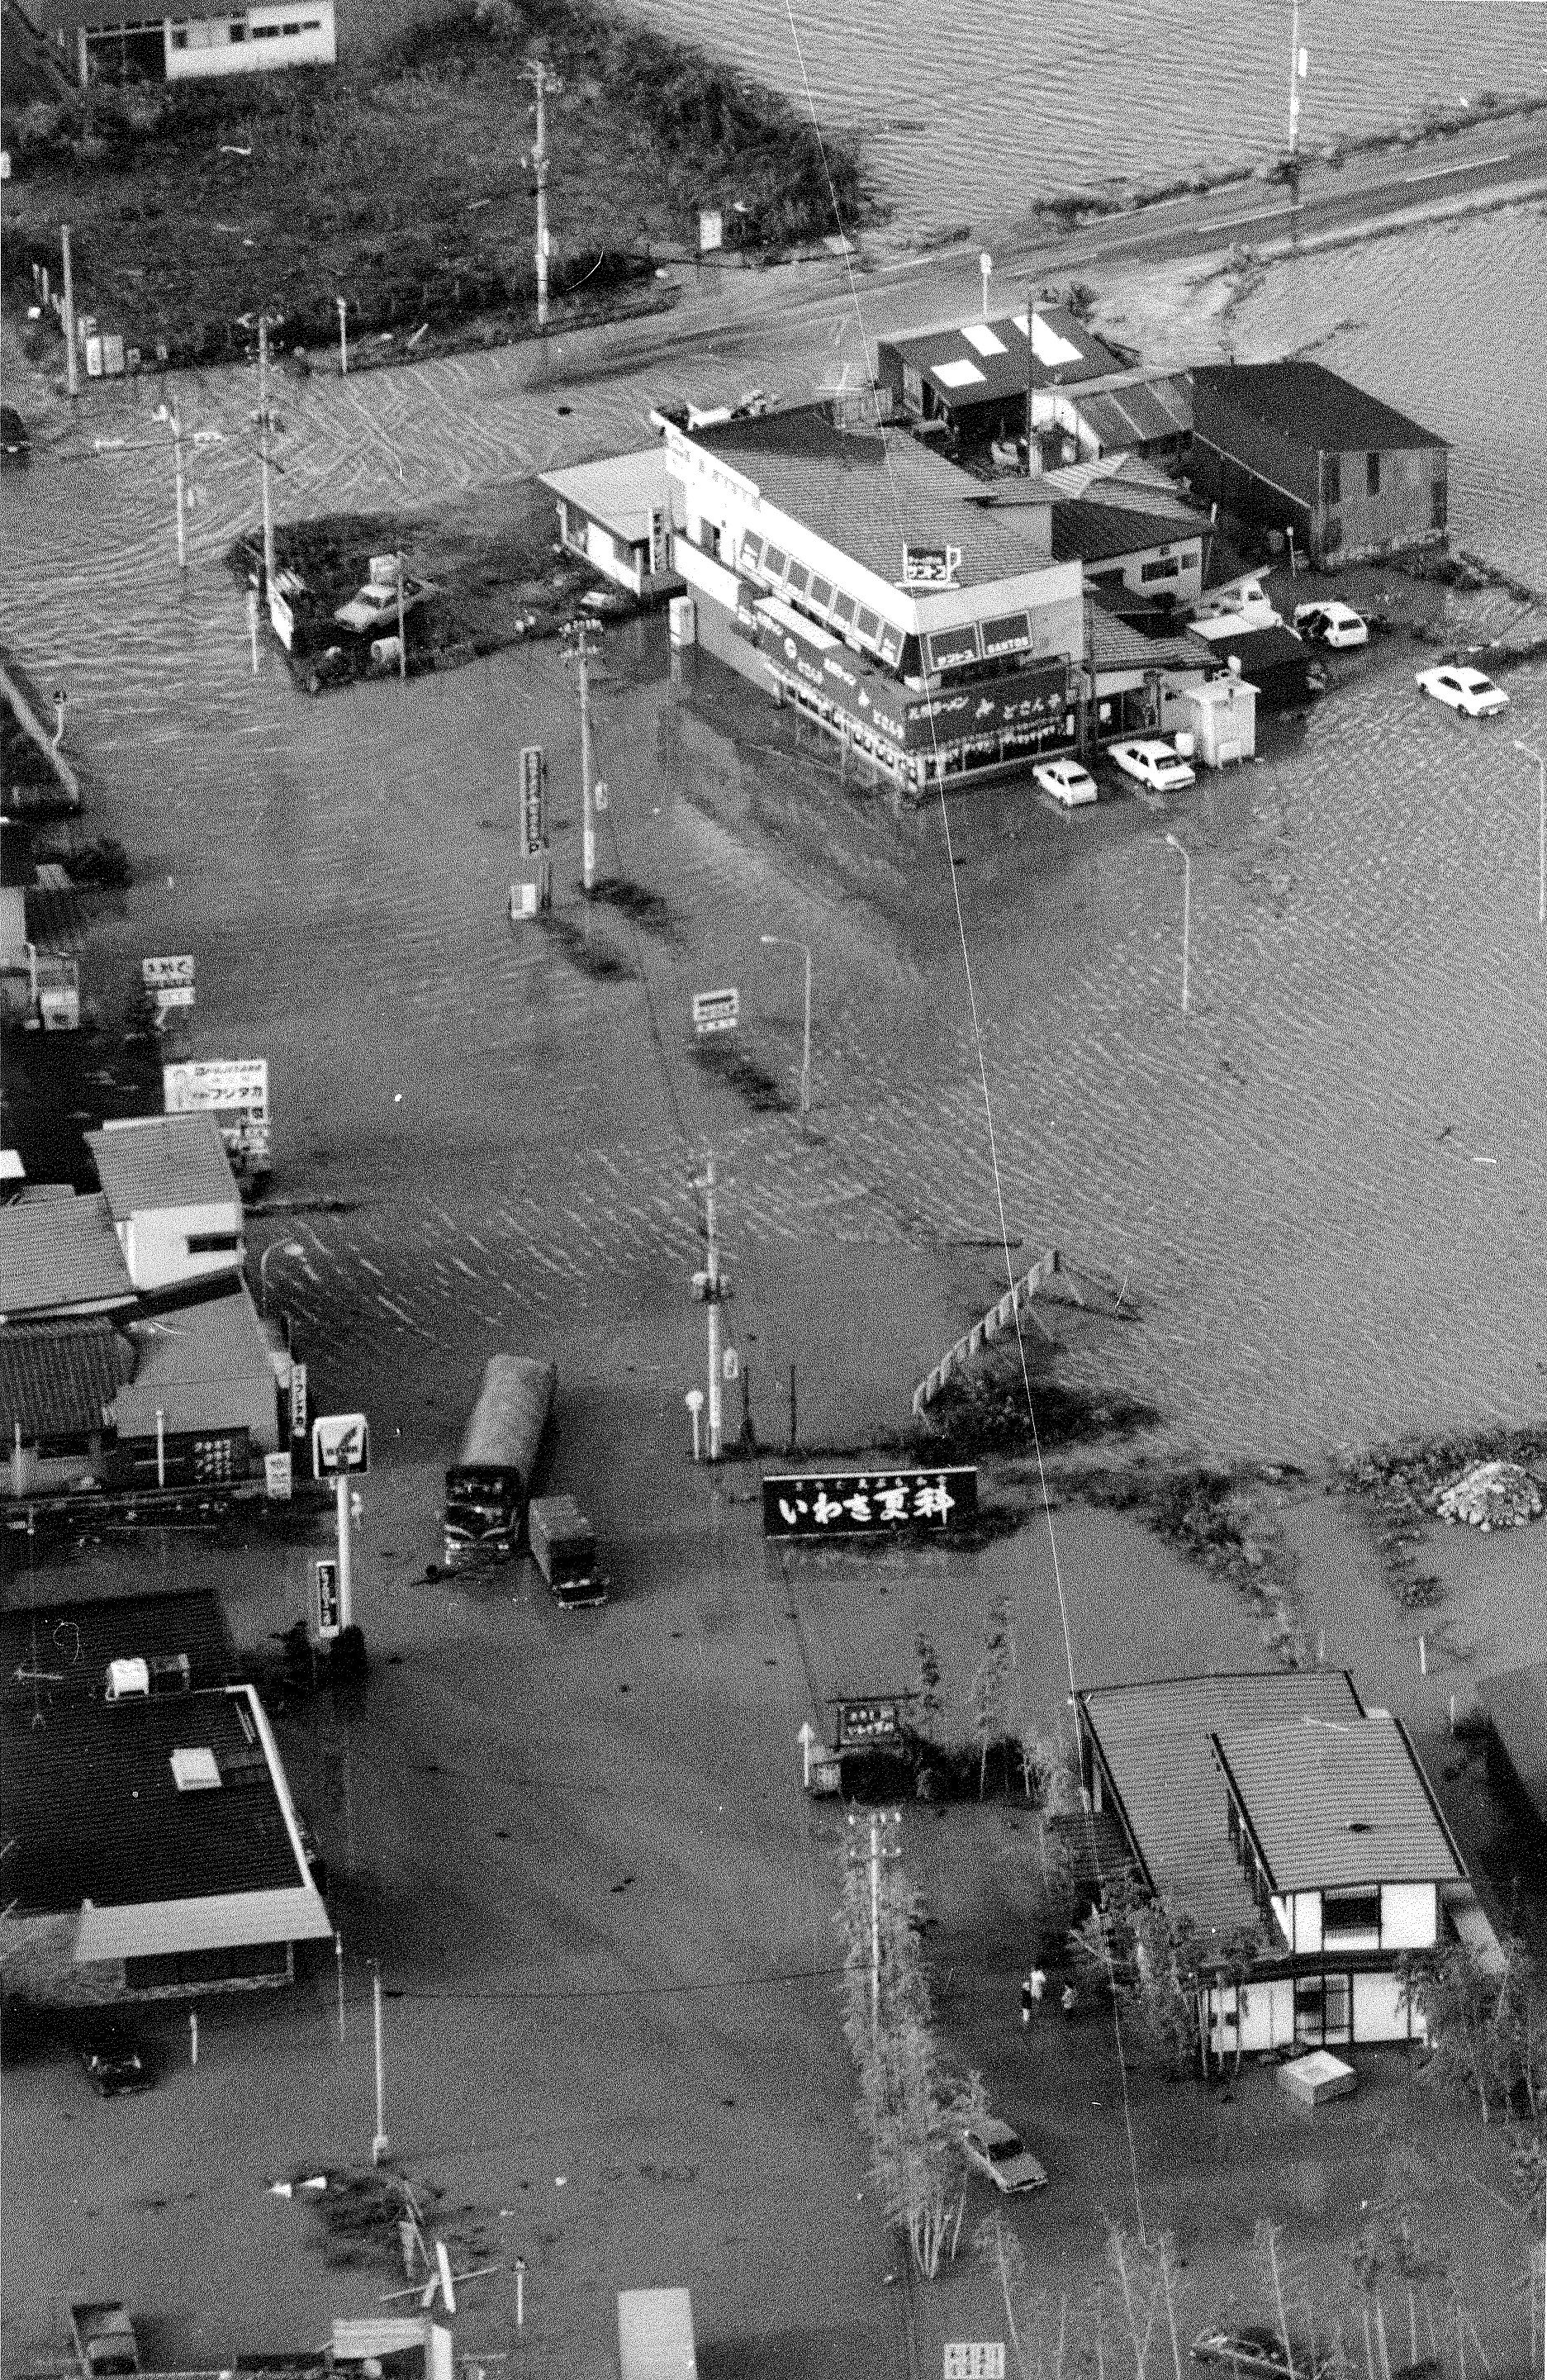 鹿島街道の船戸付近の水害を空から撮影(昭和60年頃、いわき市撮影)